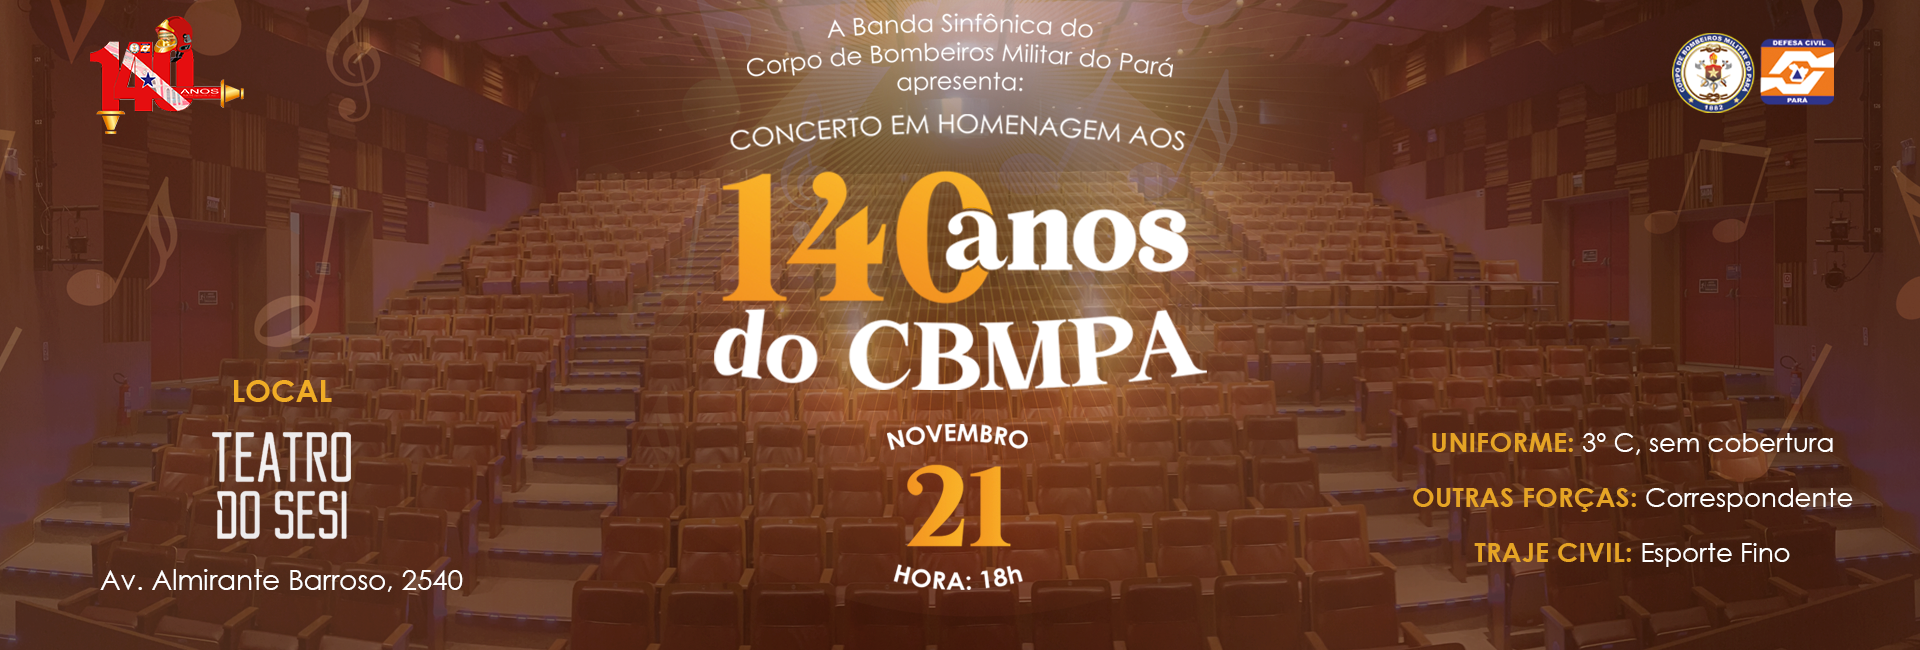 Concerto Musical da Banda Sinfônica do CBMPA